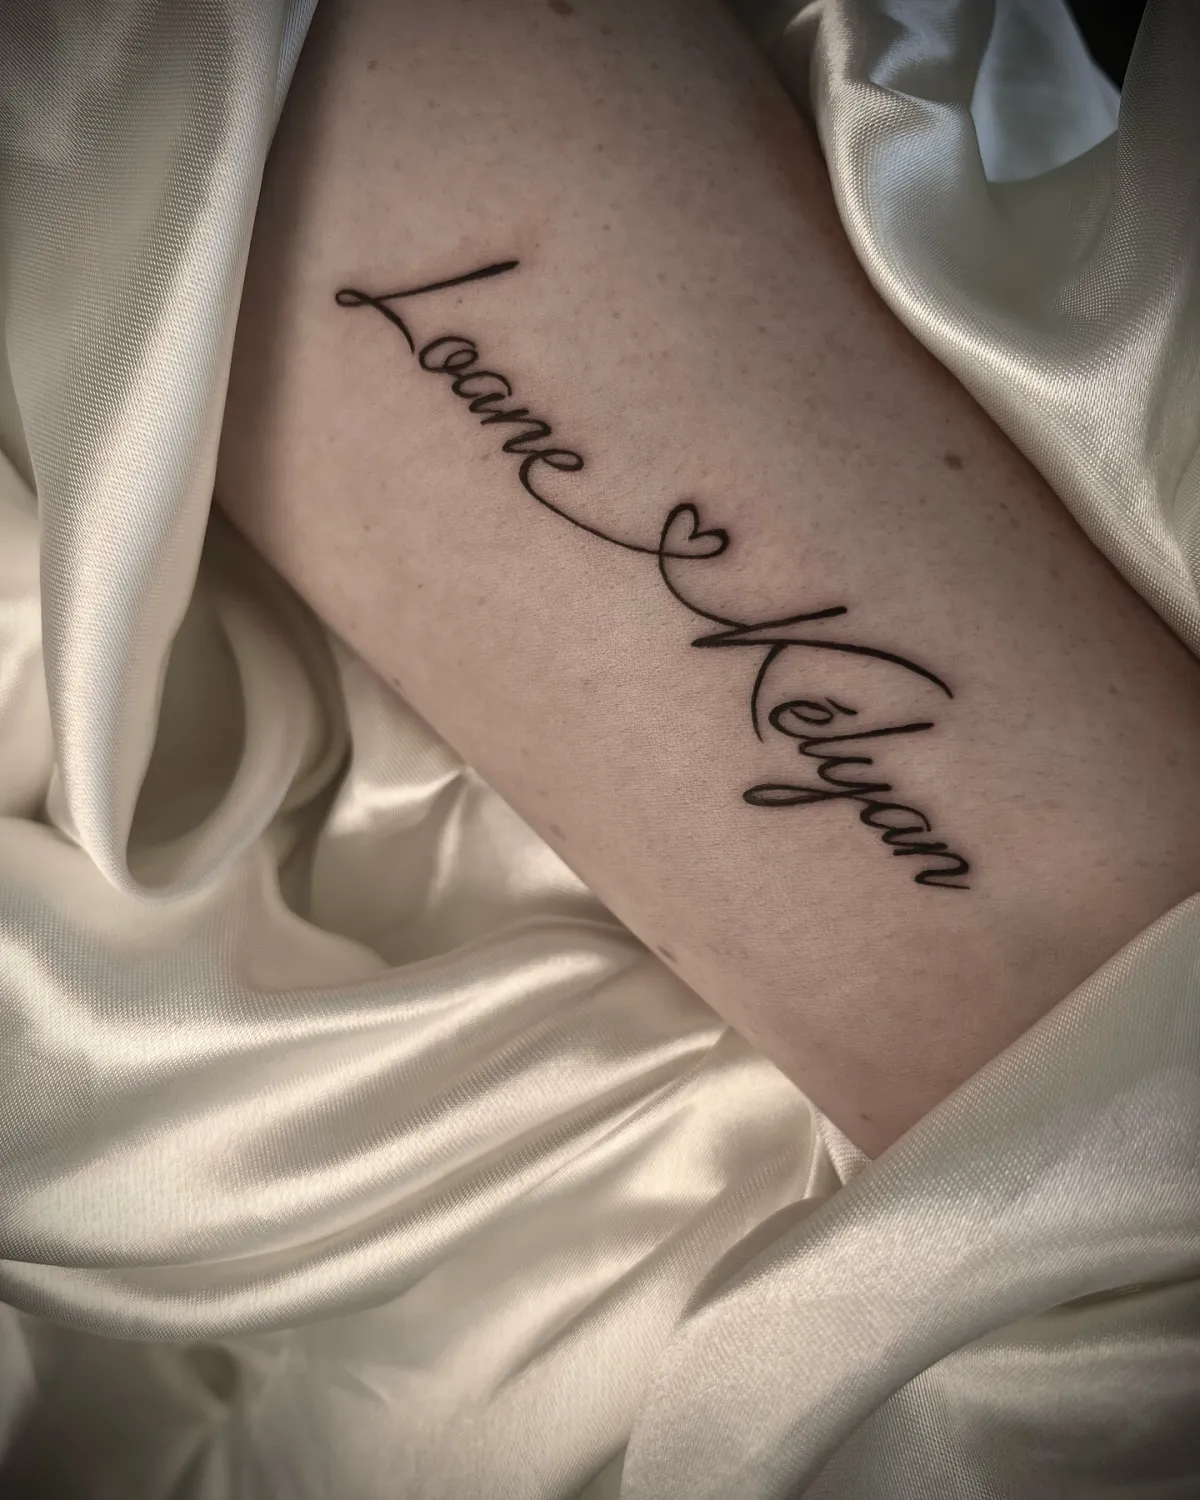 lafillequitatoue tatouage leane et keylan sur l arm d une femme